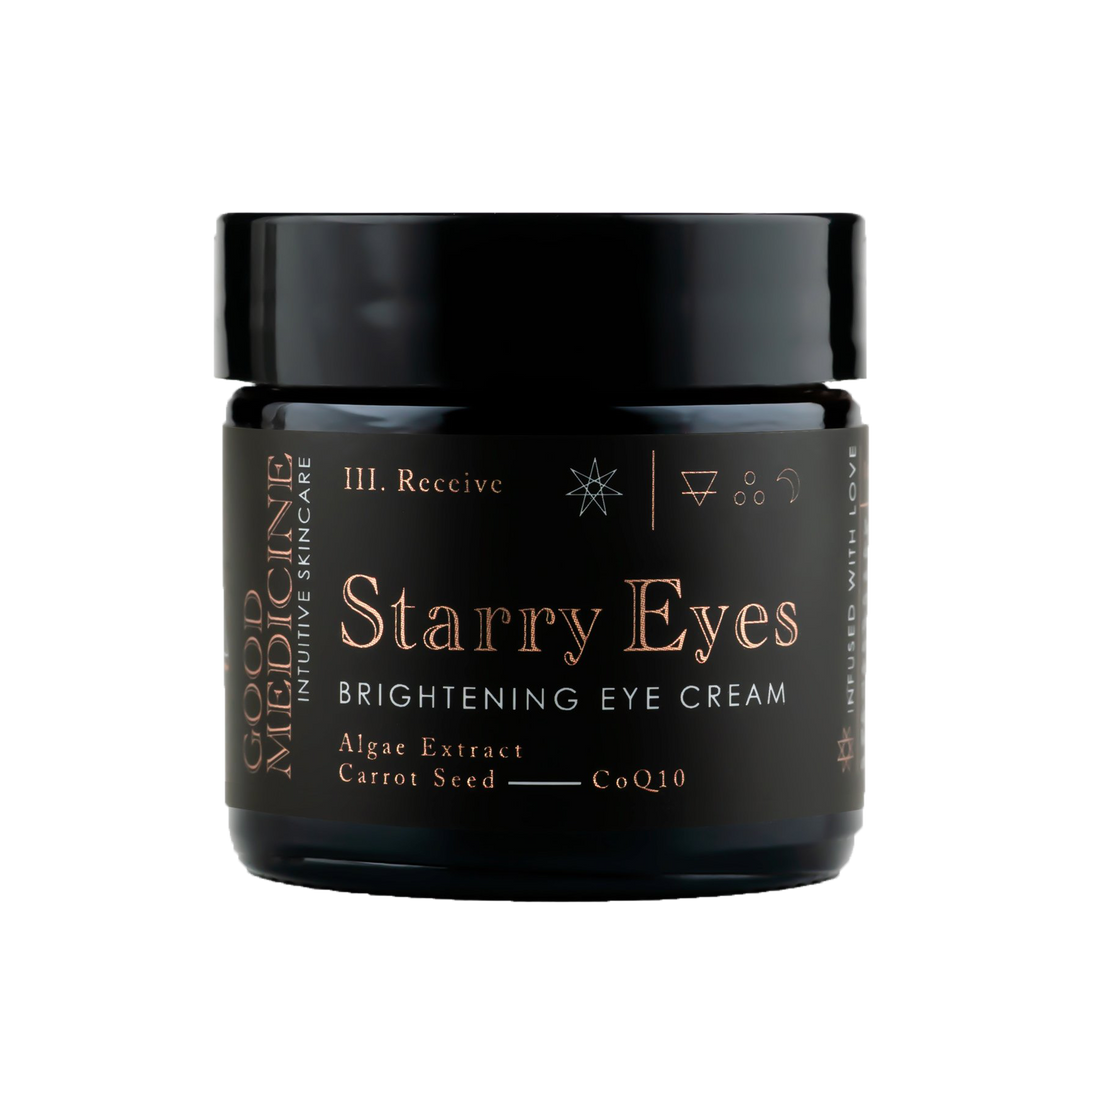 STARRY EYES Brightening Eye Cream